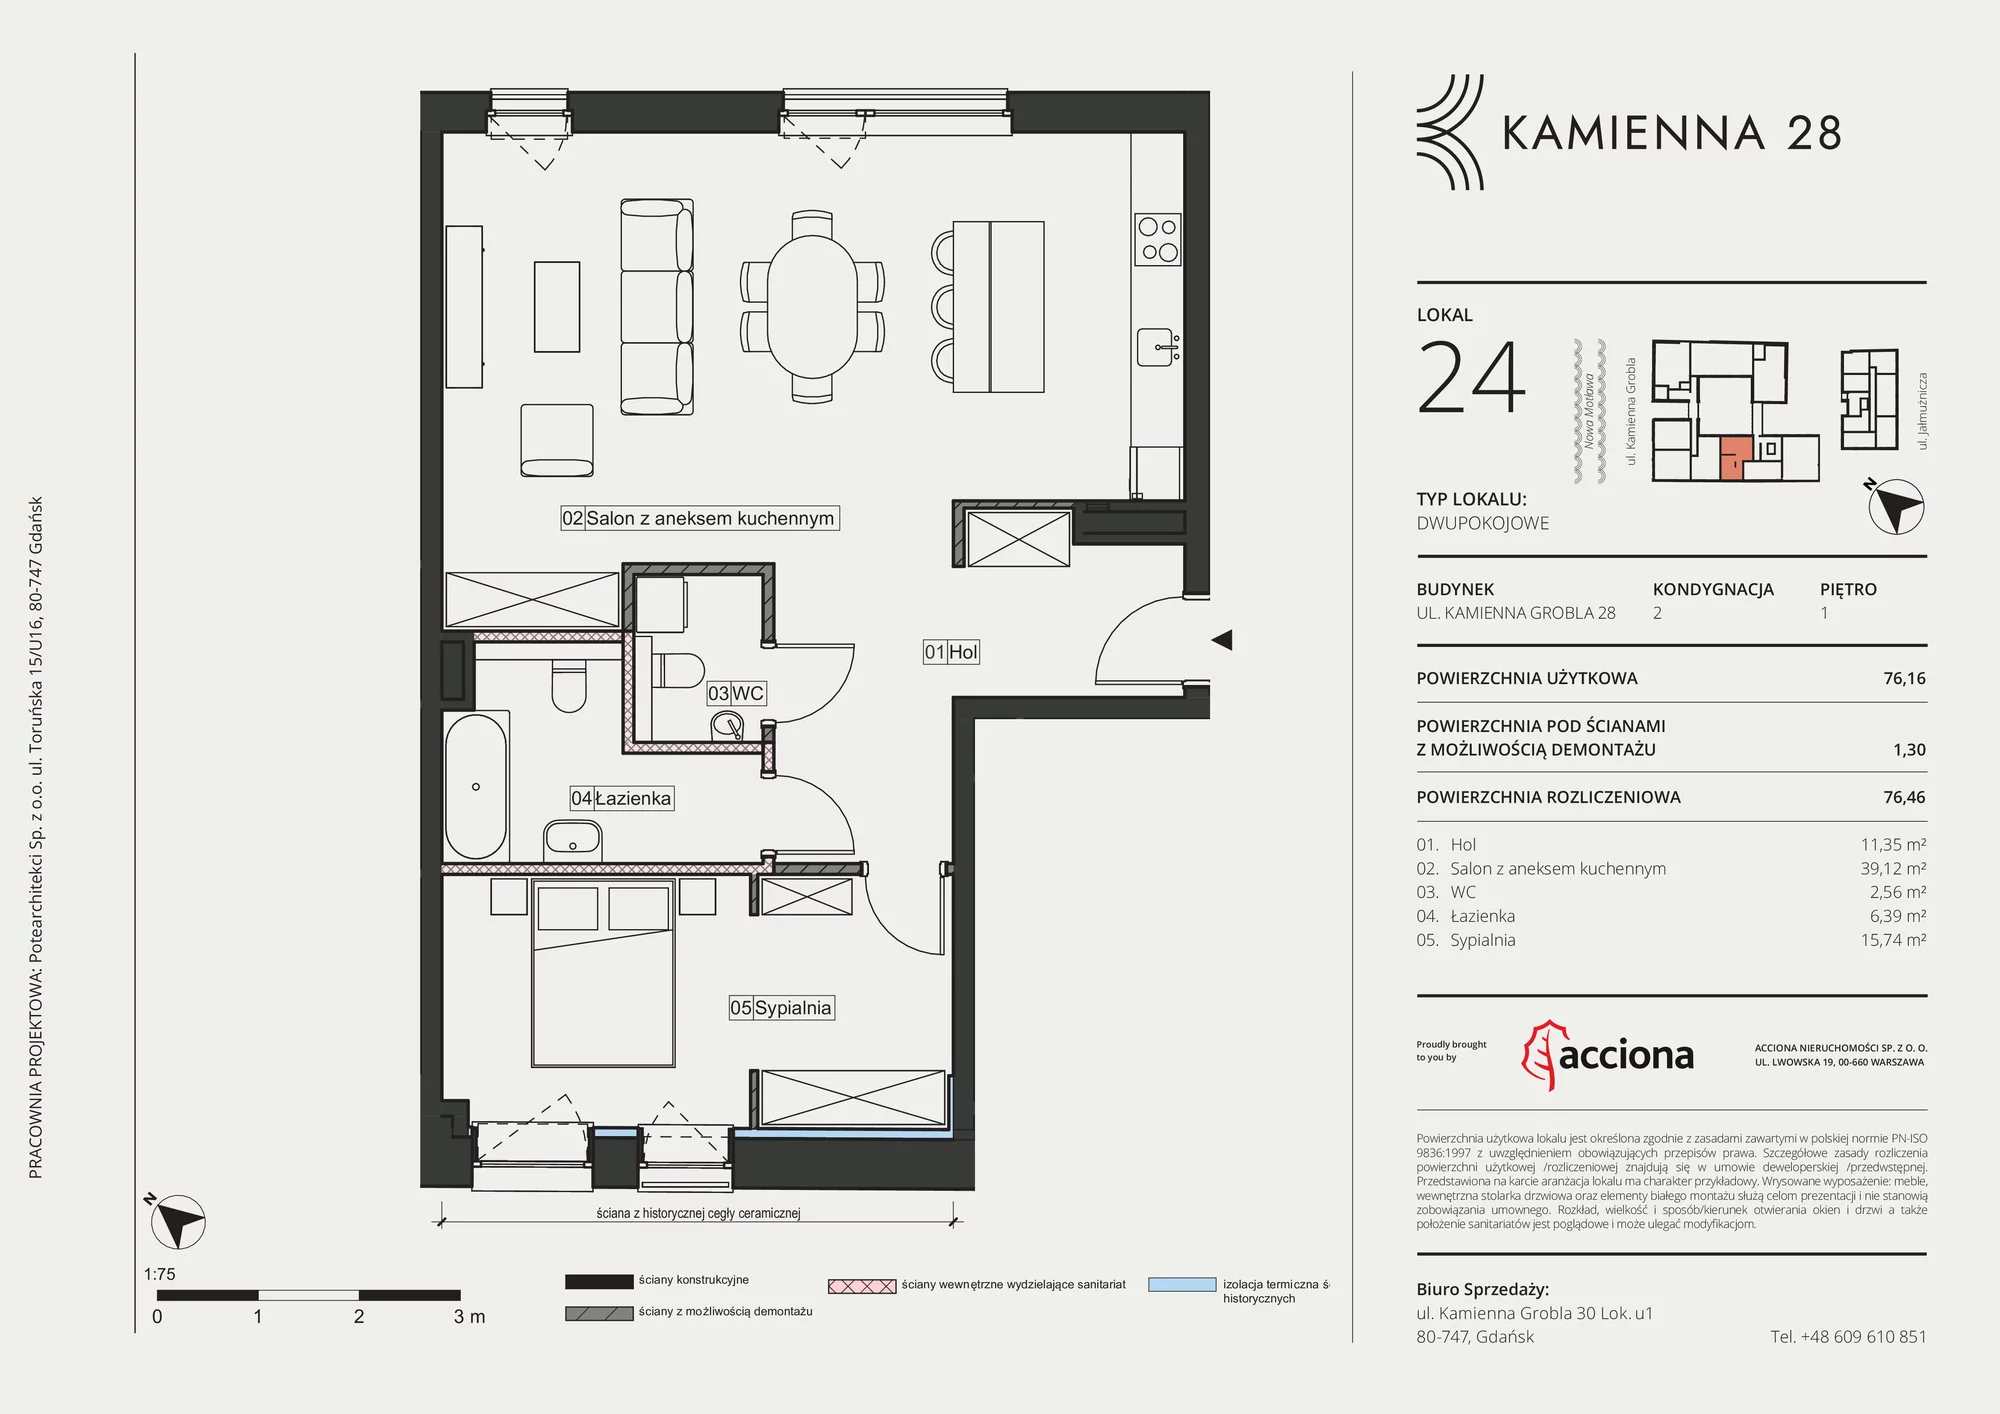 Apartament 76,46 m², piętro 1, oferta nr 28.24, Kamienna 28, Gdańsk, Śródmieście, Dolne Miasto, ul. Kamienna Grobla 28/29